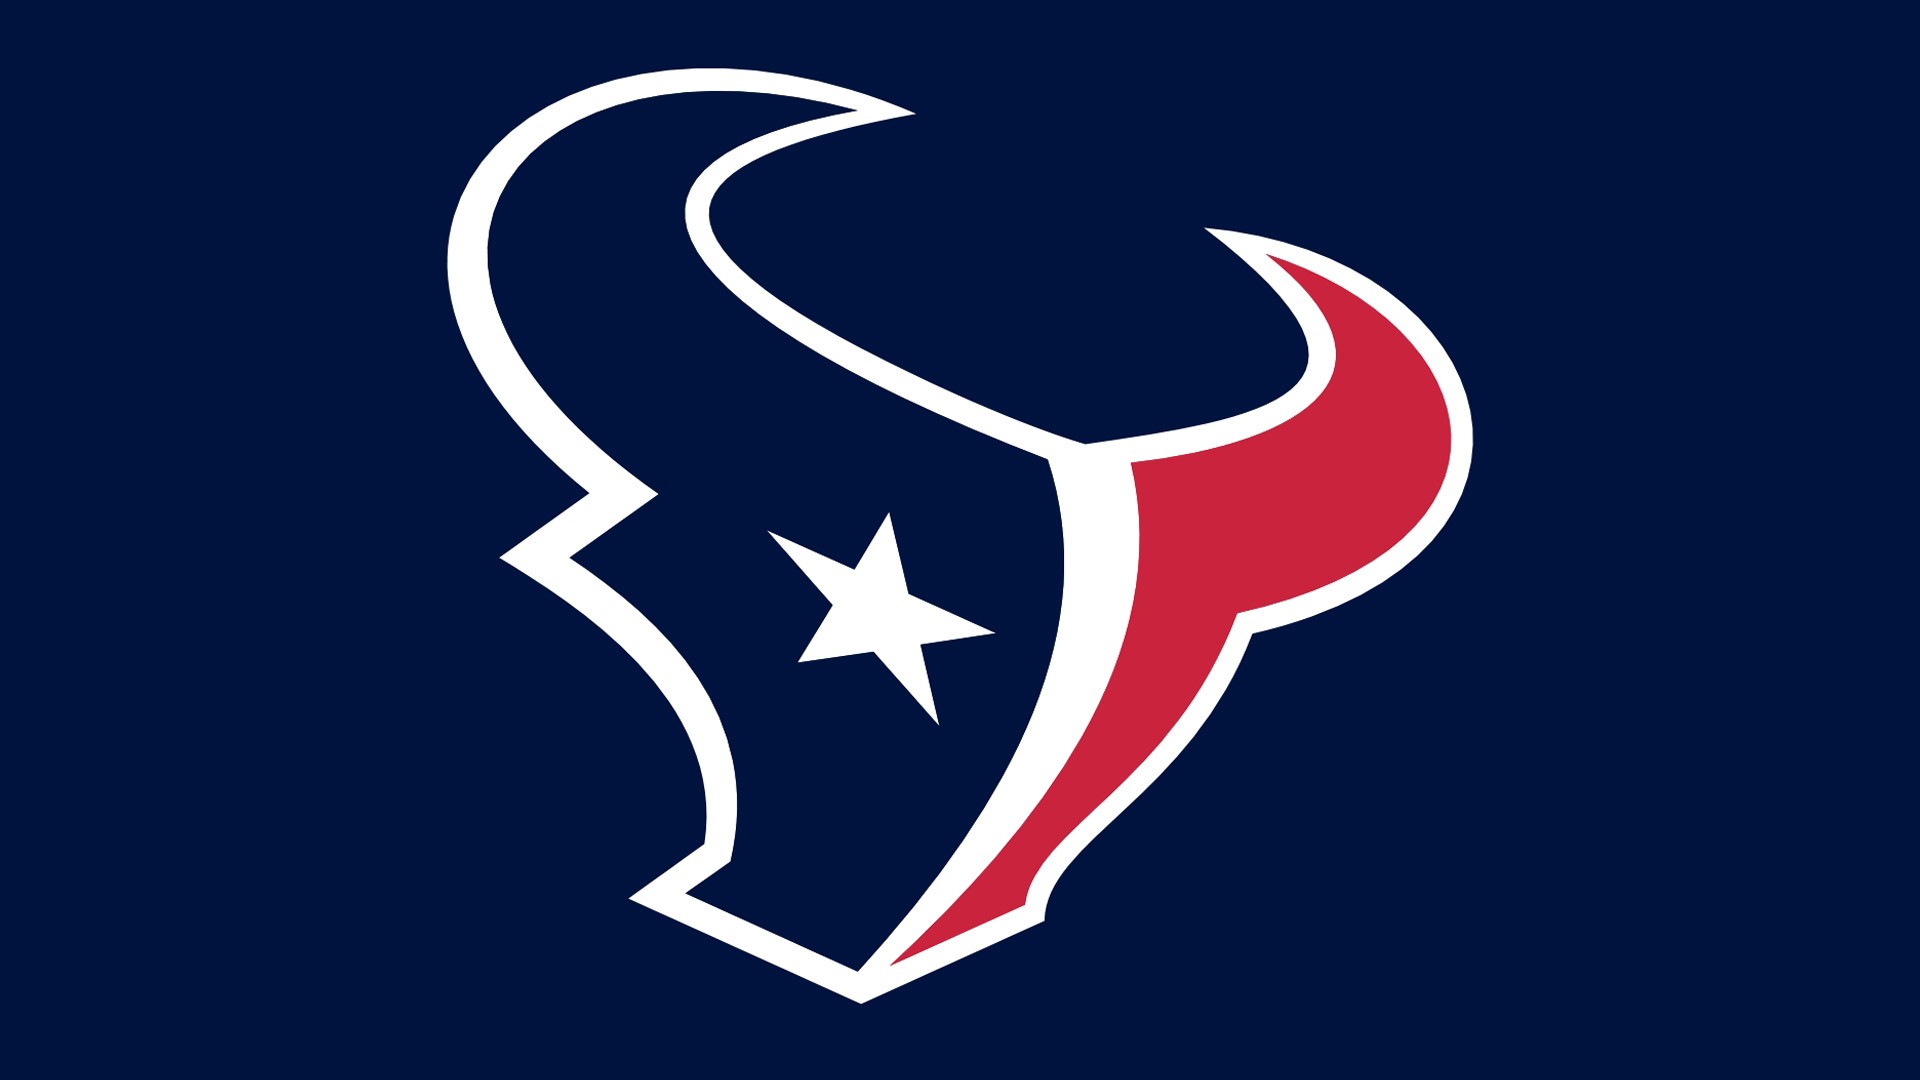 NFL Hoston Texans Blue Back Logo 1920x1080 HD NFL Houston Texans